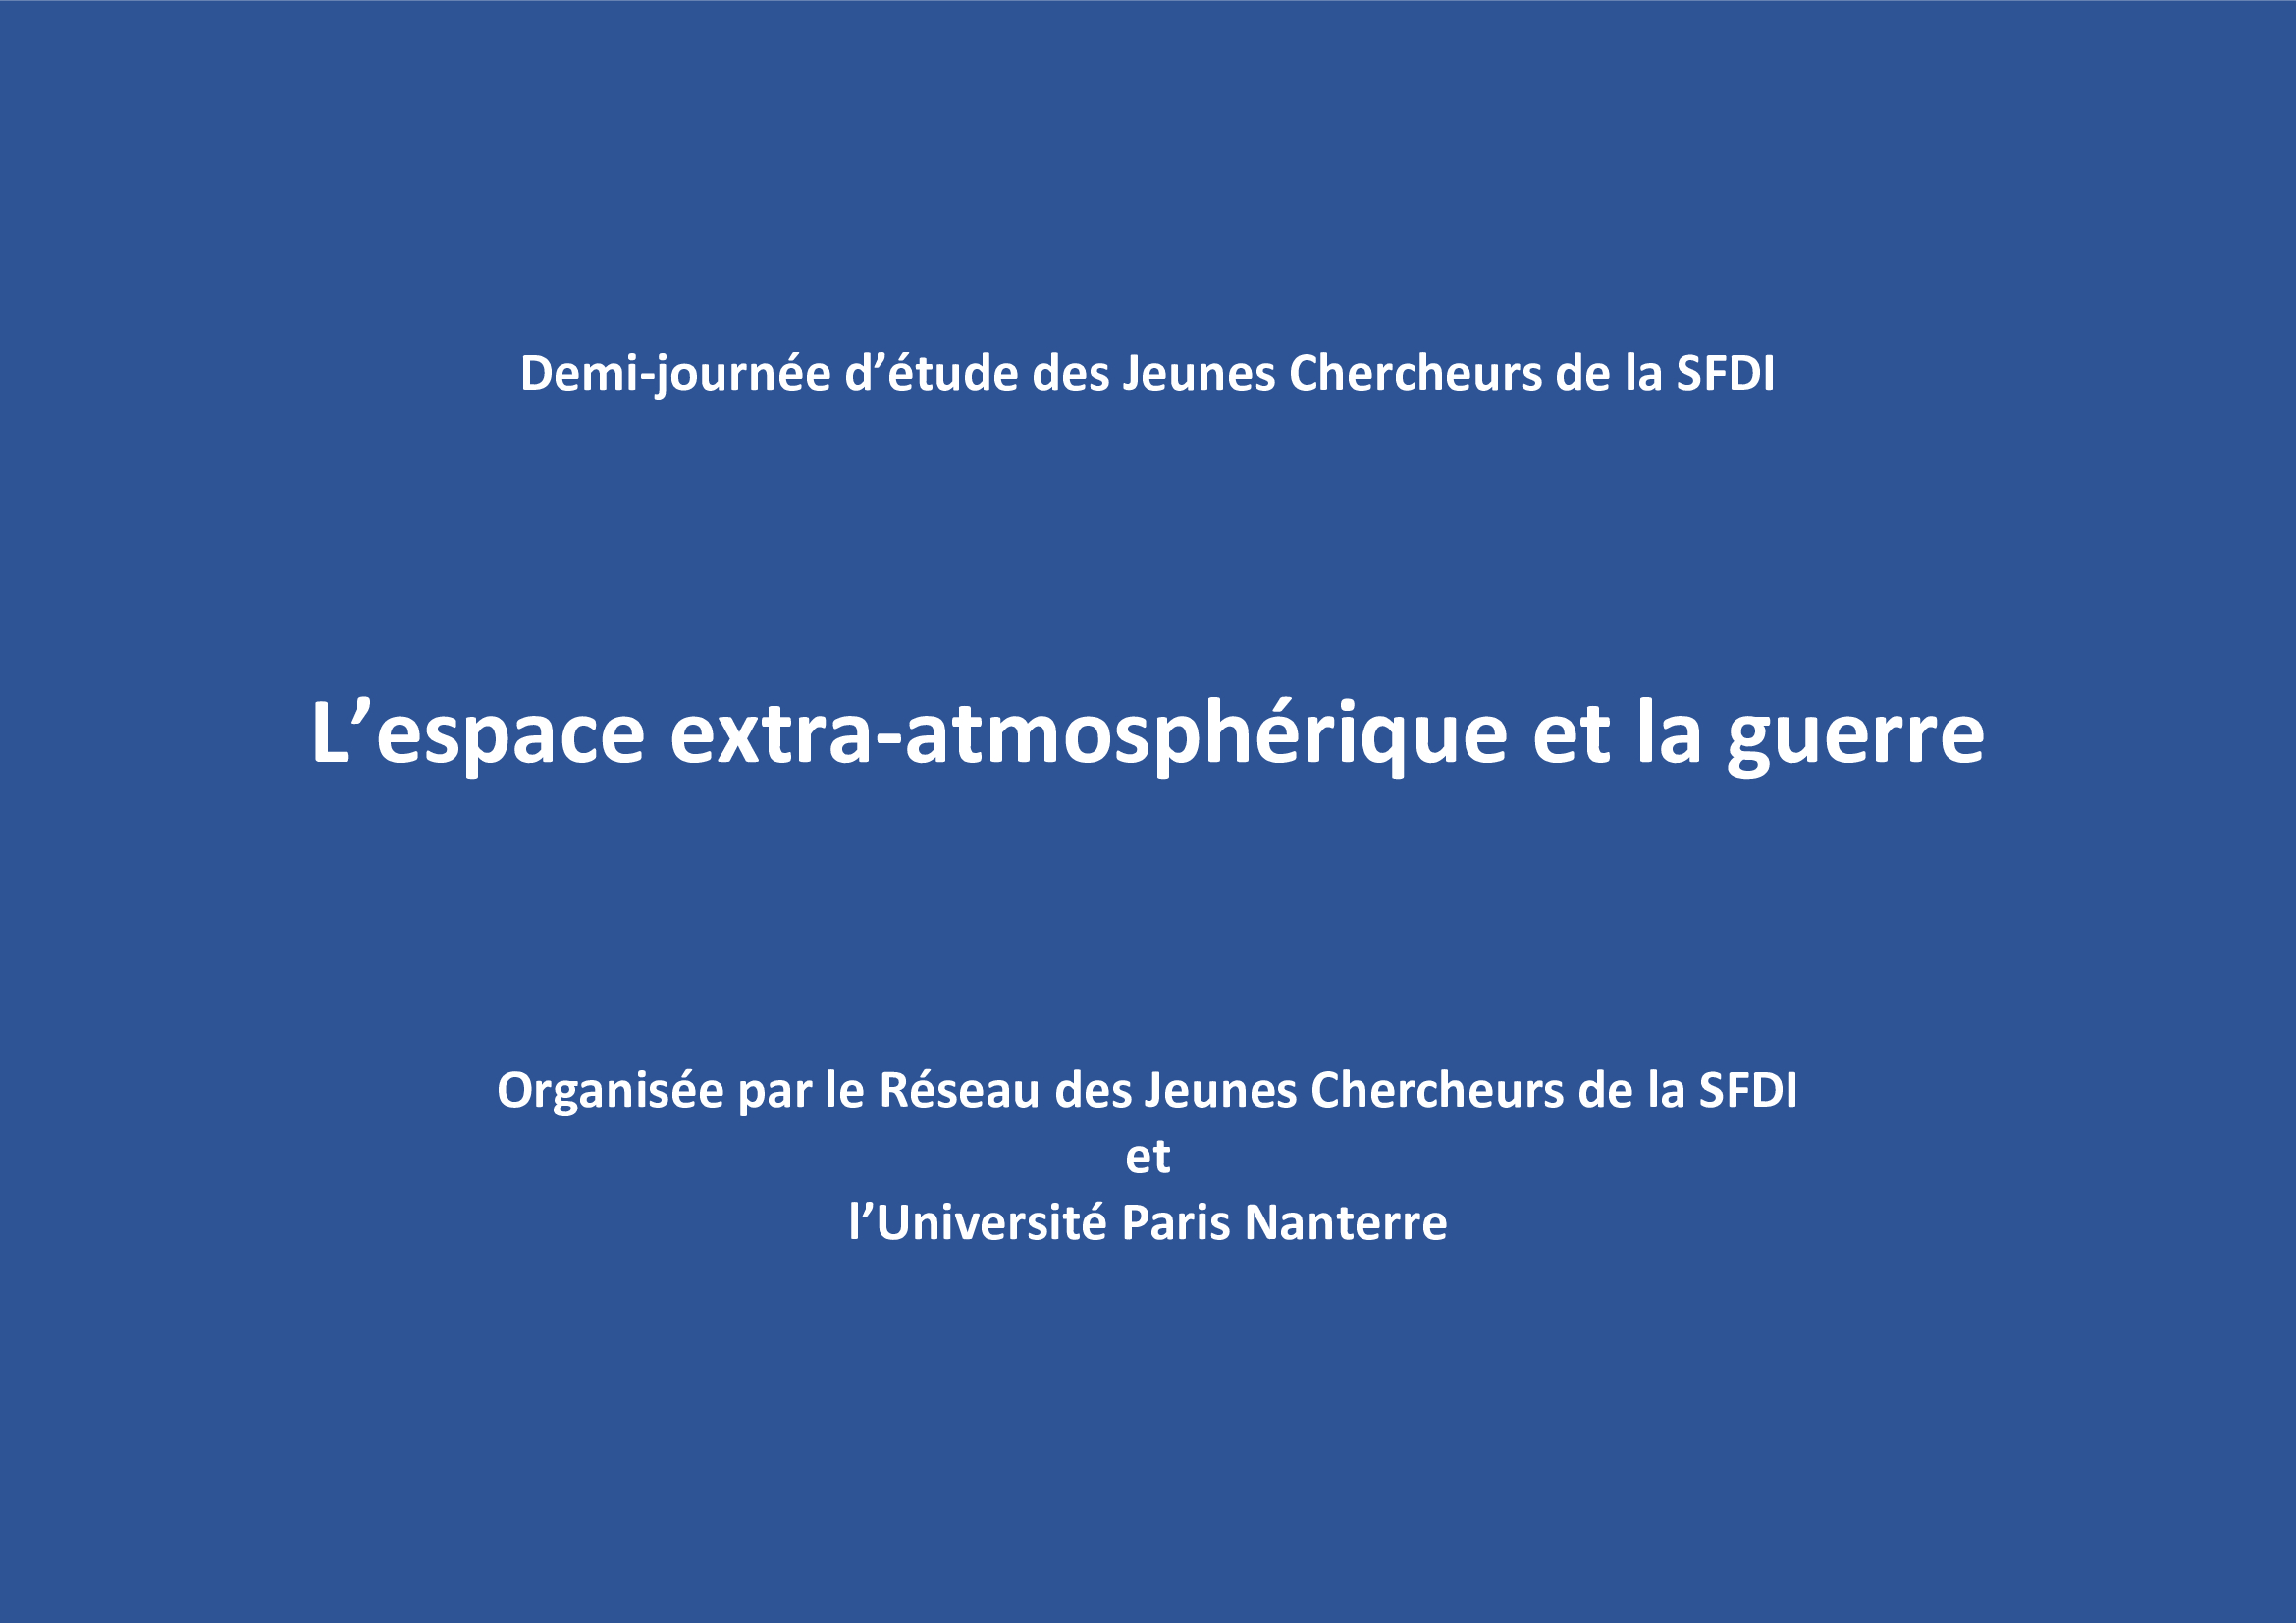 "La protection de l’environnement en cas de guerre dans l’espace extra-atmosphérique", par M. Vigné